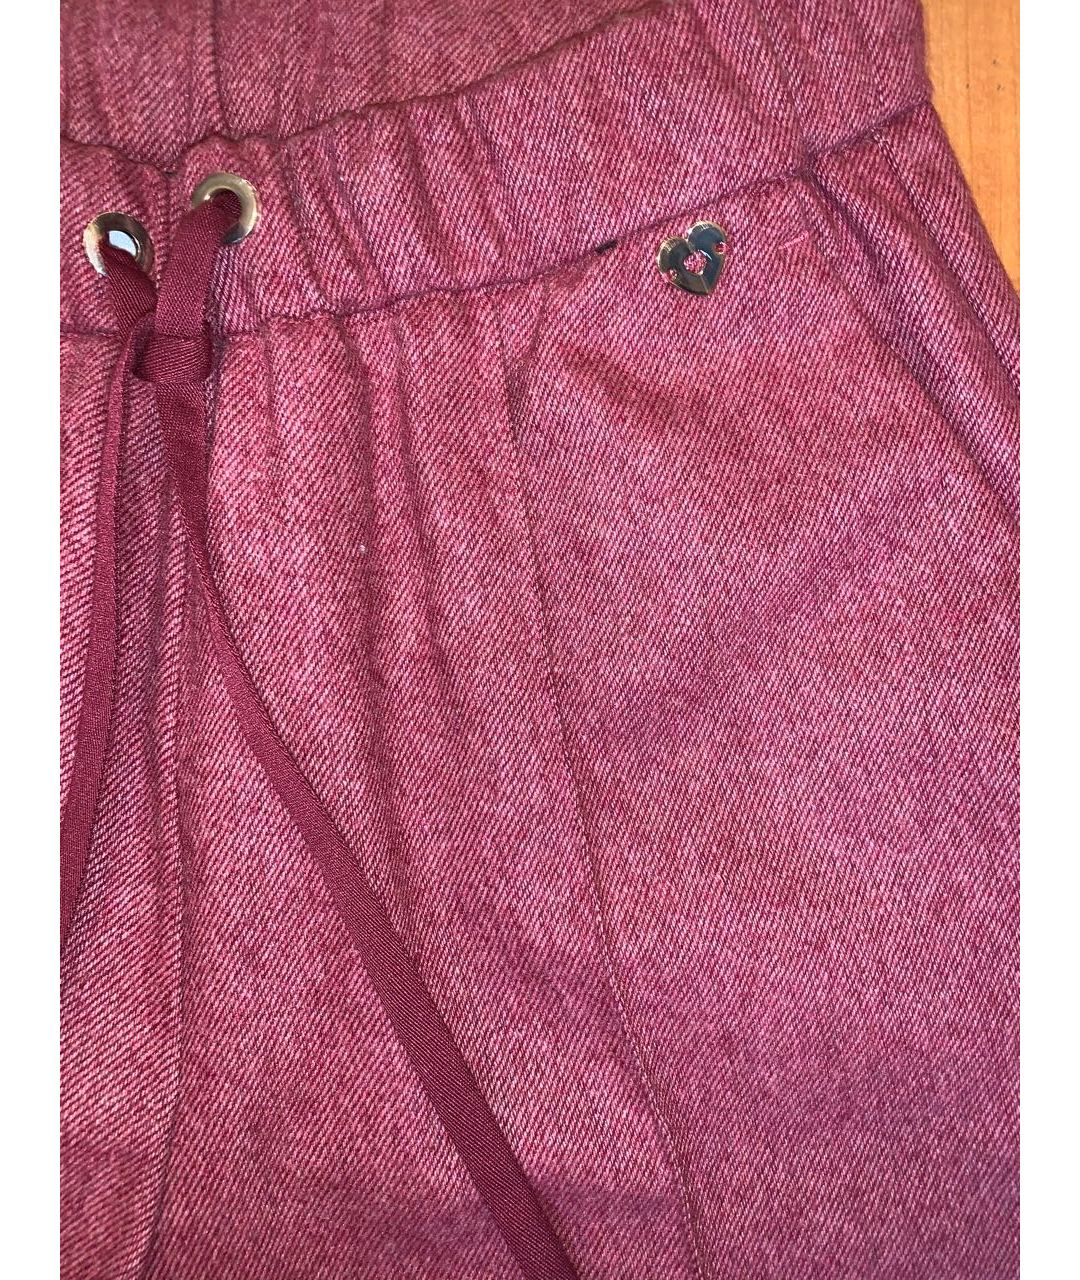 TWIN-SET Красные шерстяные брюки узкие, фото 4